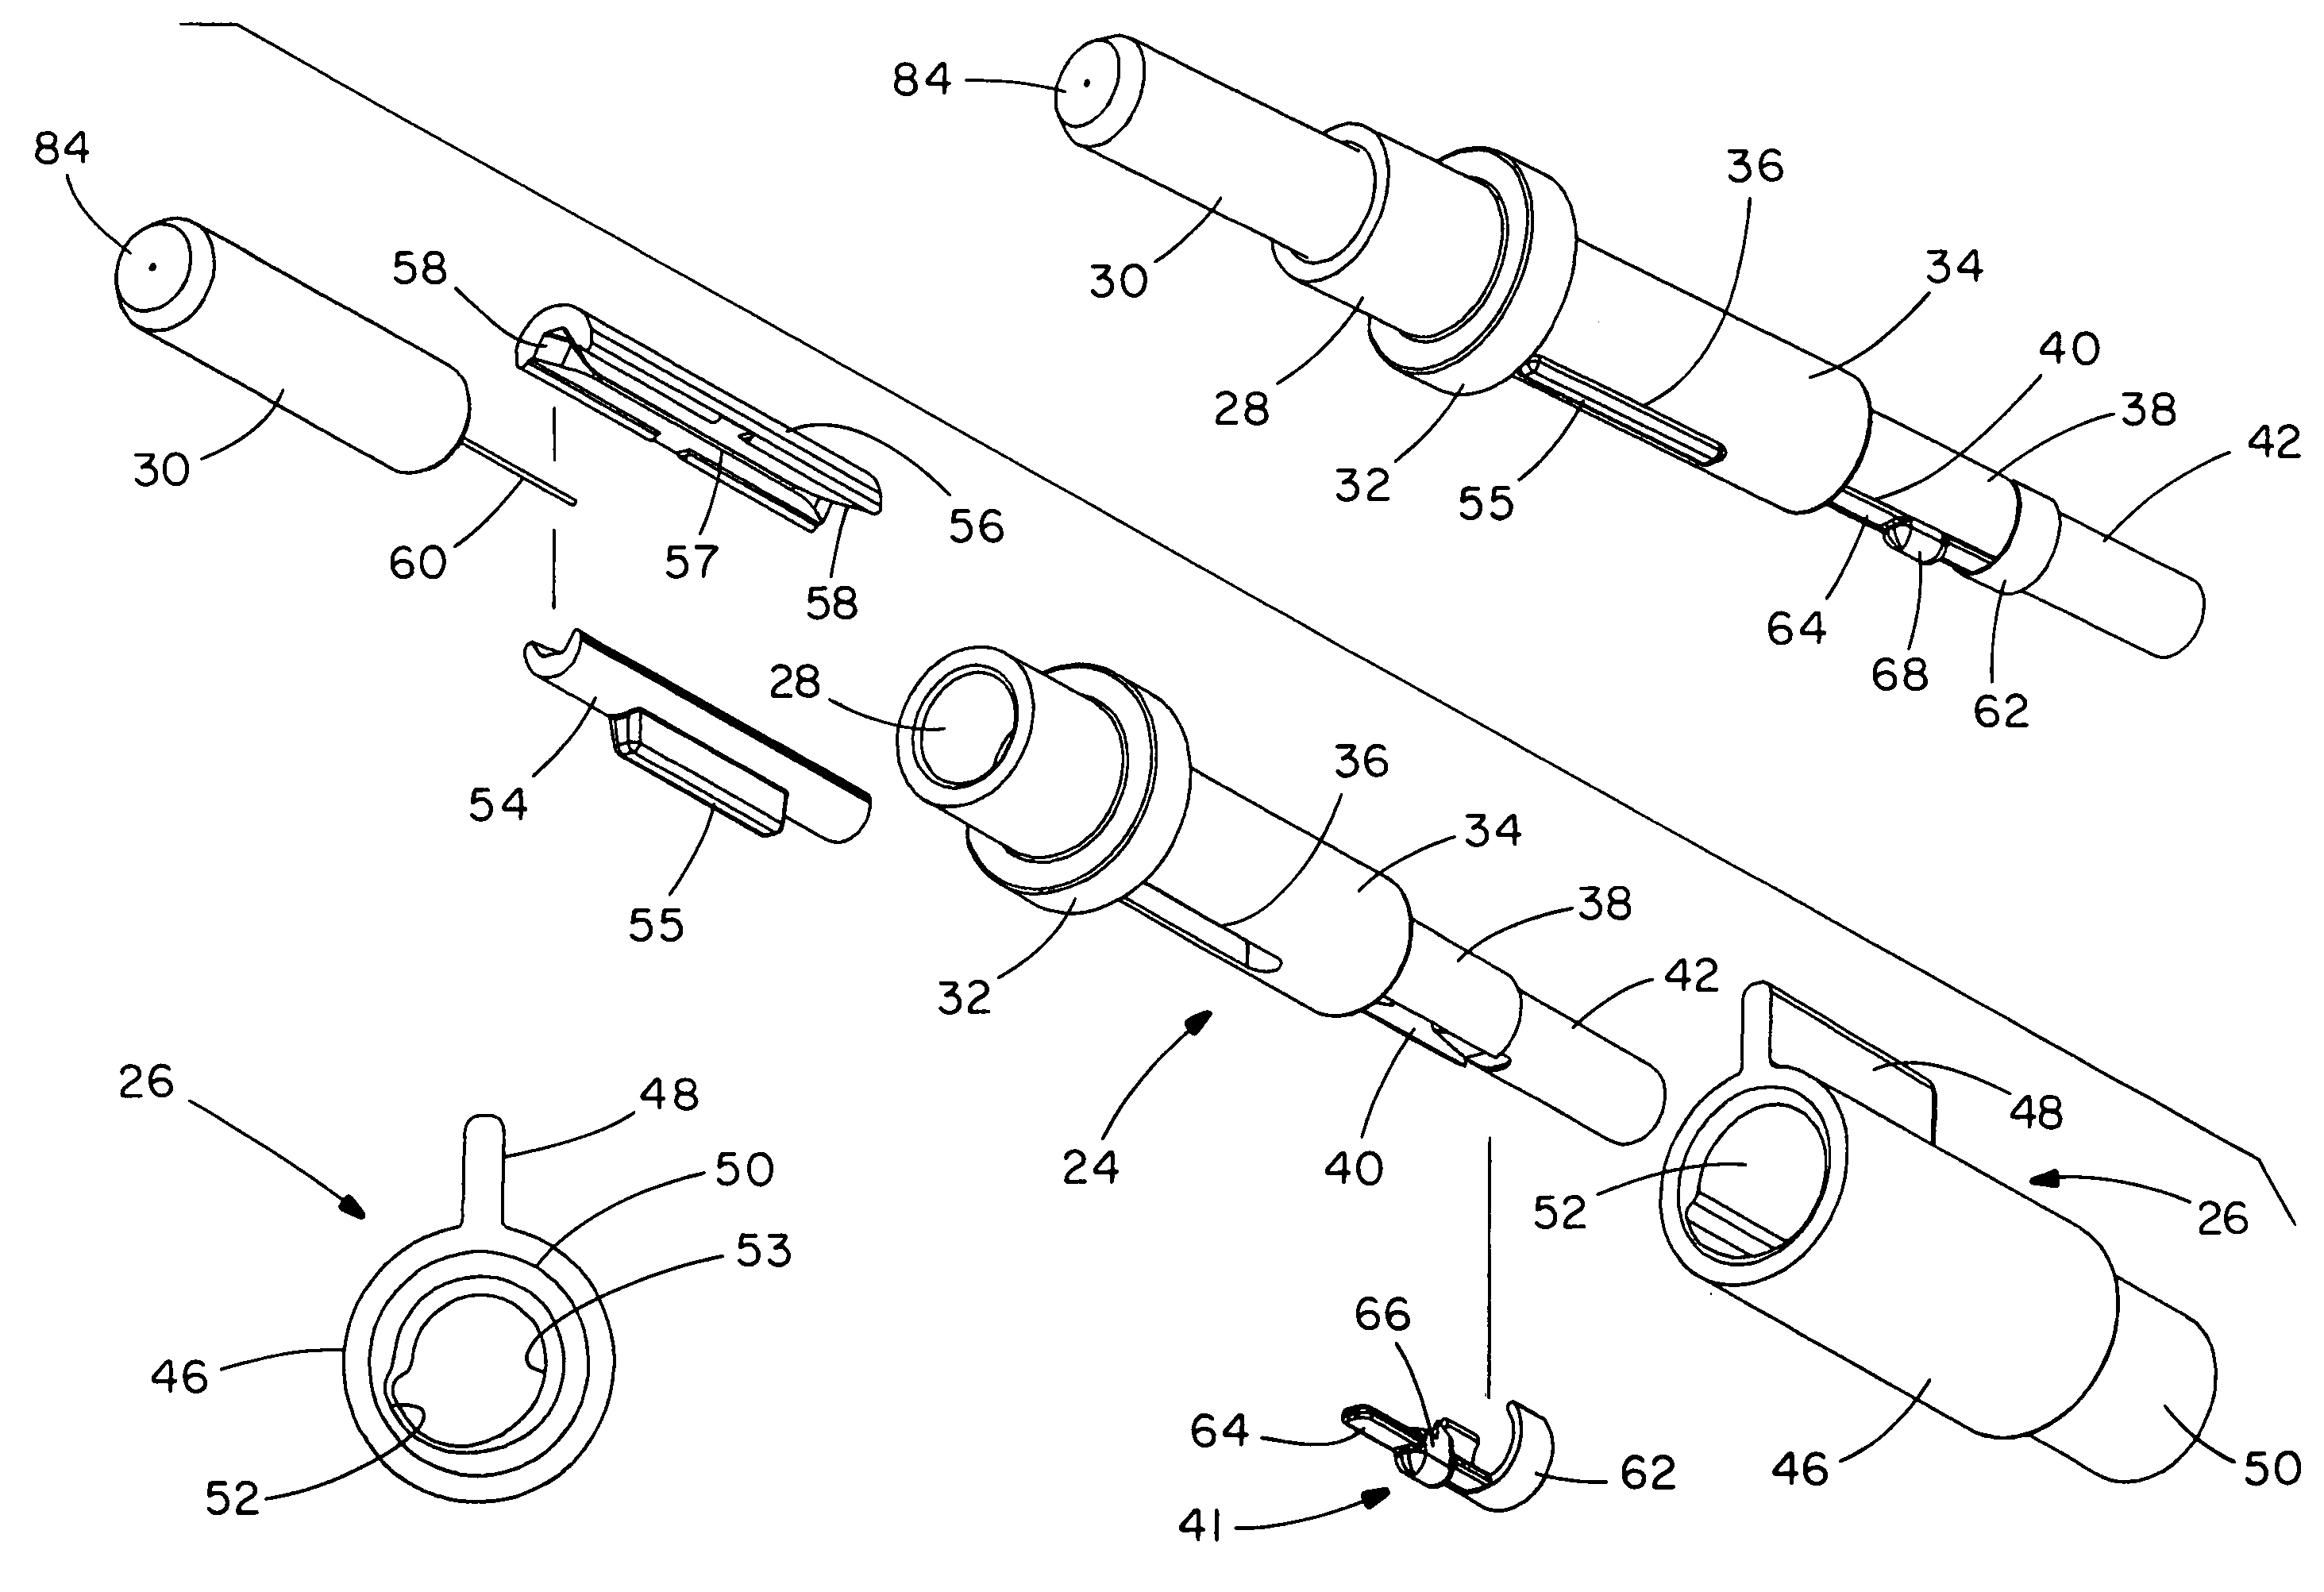 Reversible fiber optic stub fiber connector